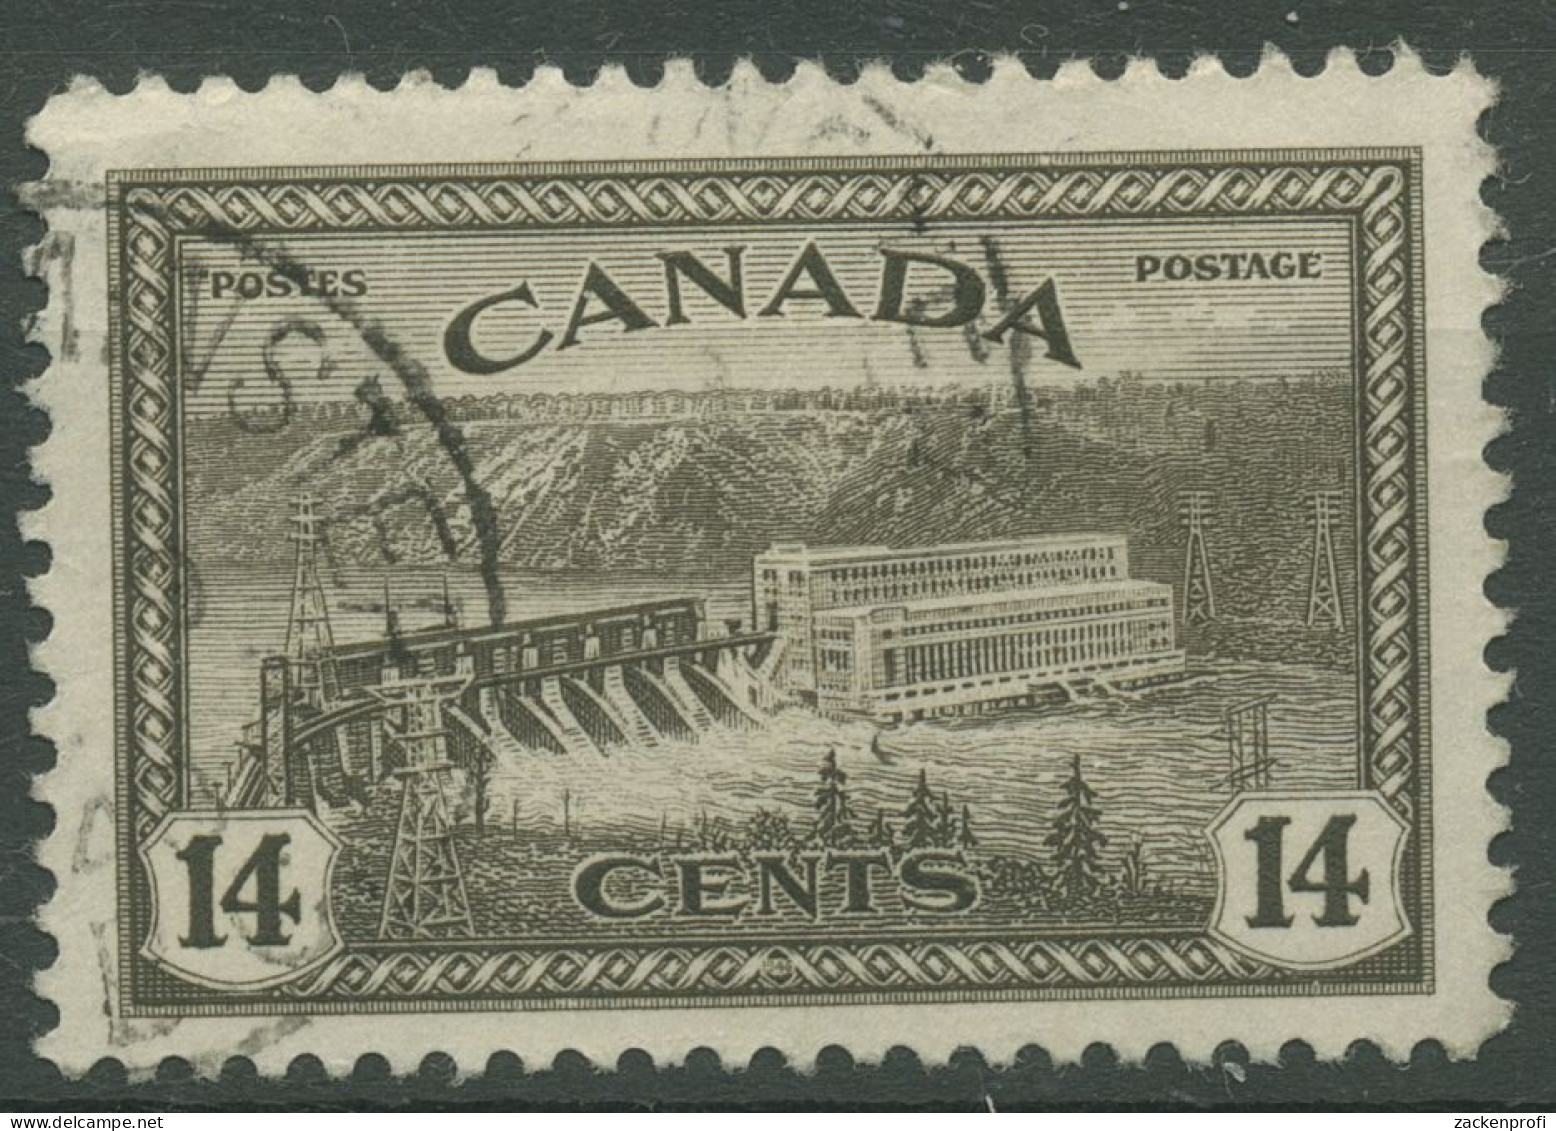 Kanada 1946 Umstellung Auf Friedensproduktion Wasserkraftwerk 237 Gestempelt - Oblitérés